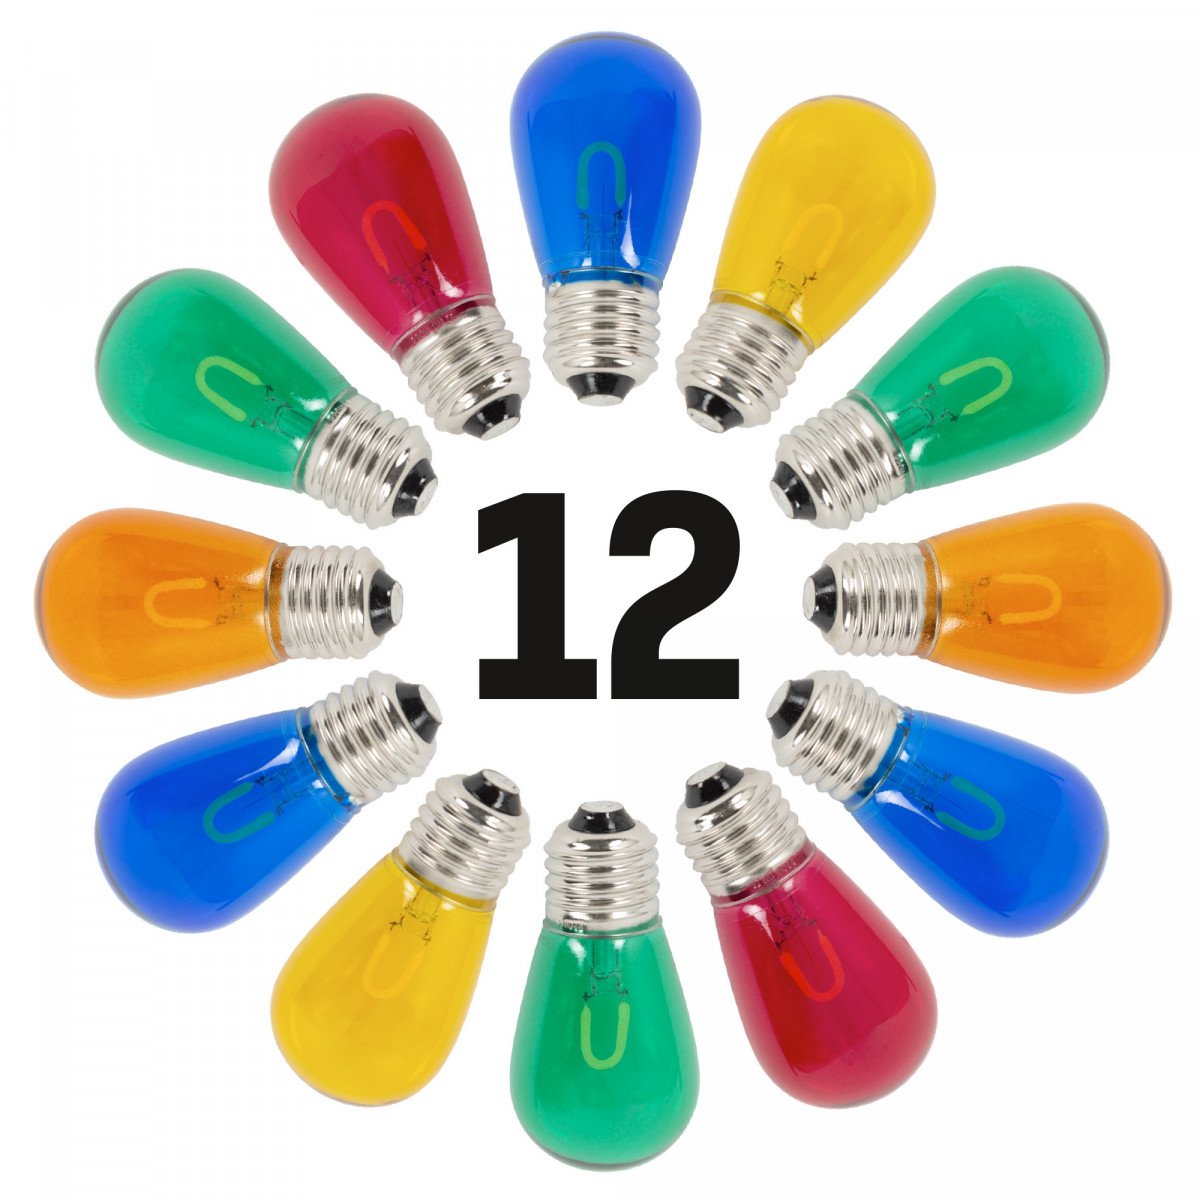 12 ampoules x 1 watt Éclairage festif LED en couleurs 